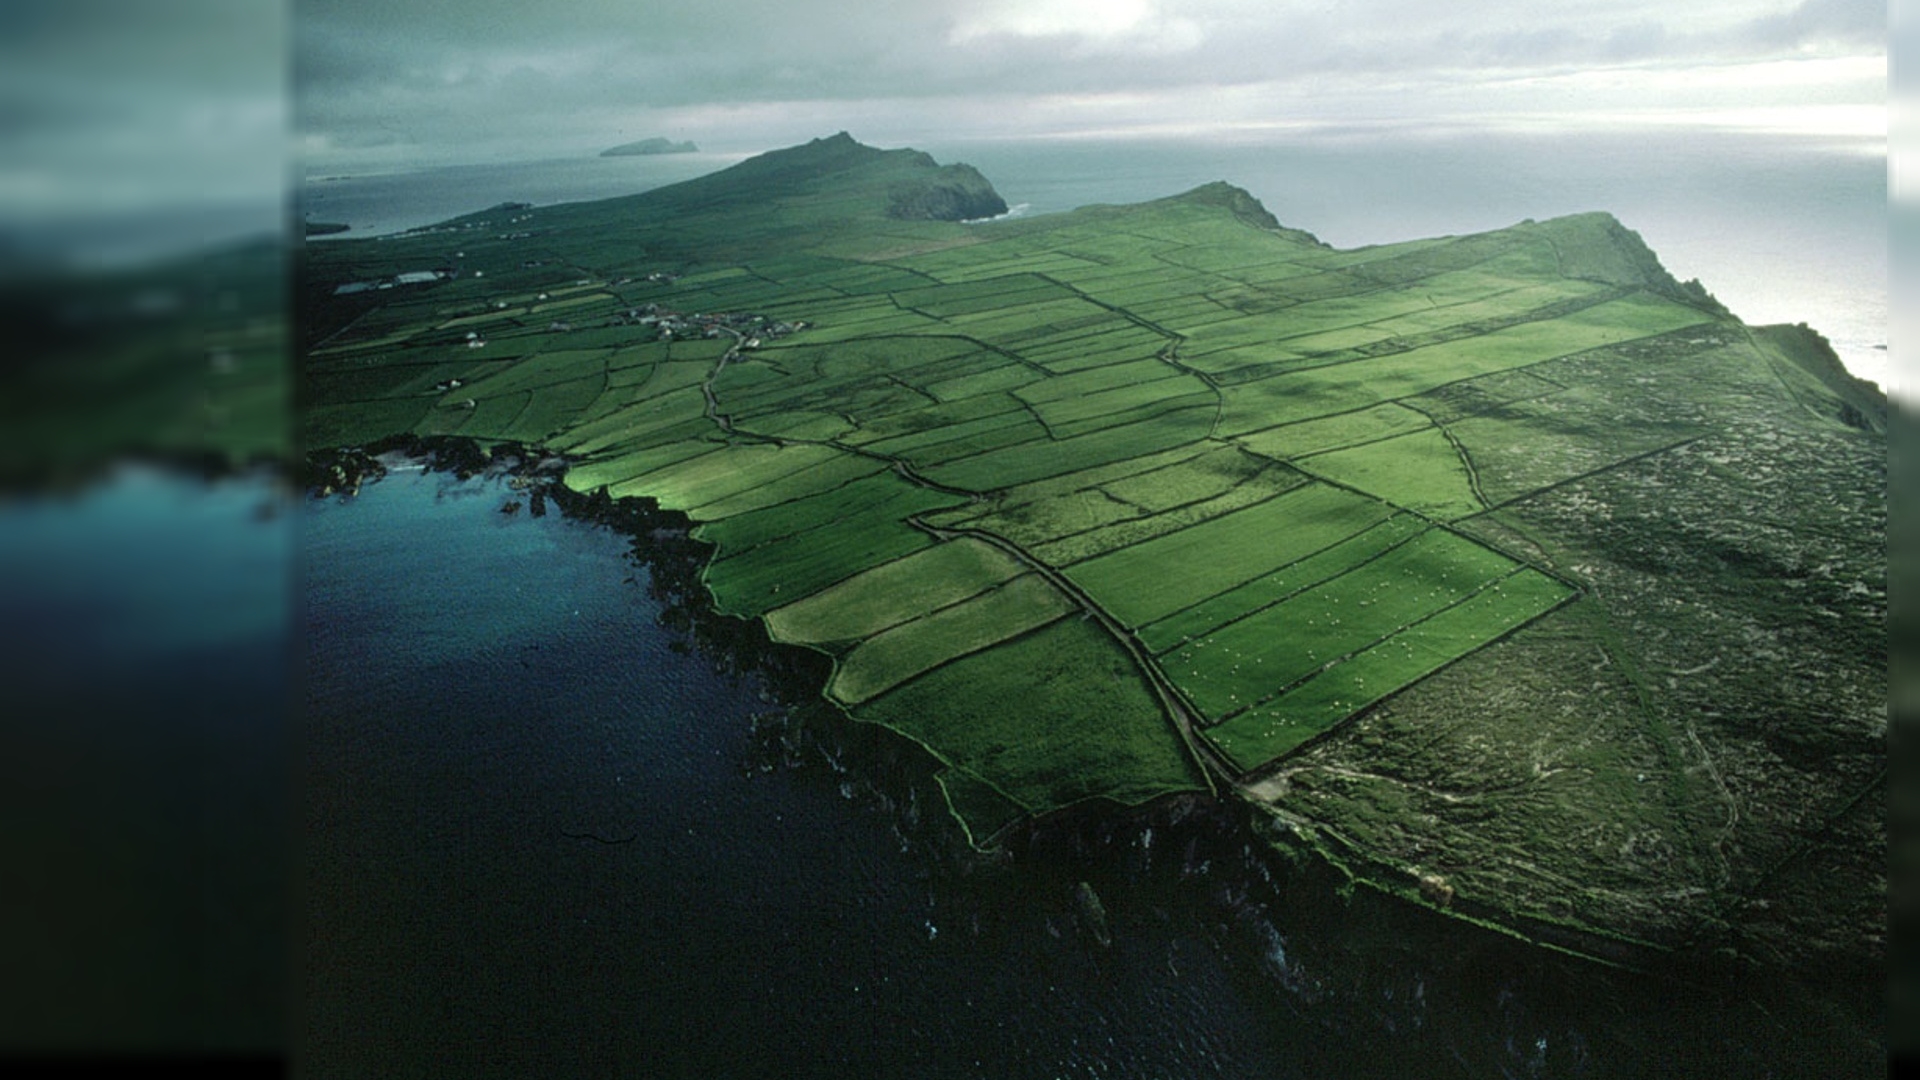 Hãy khám phá một không gian tươi mới với hình nền Irish Wallpaper HD đầy sắc màu và sinh động. Khung cảnh tuyệt đẹp từ Emerald Isle sẽ làm bạn say đắm và đưa bạn đến với vùng đất tuyệt vời của những bàn tay nghệ sĩ.